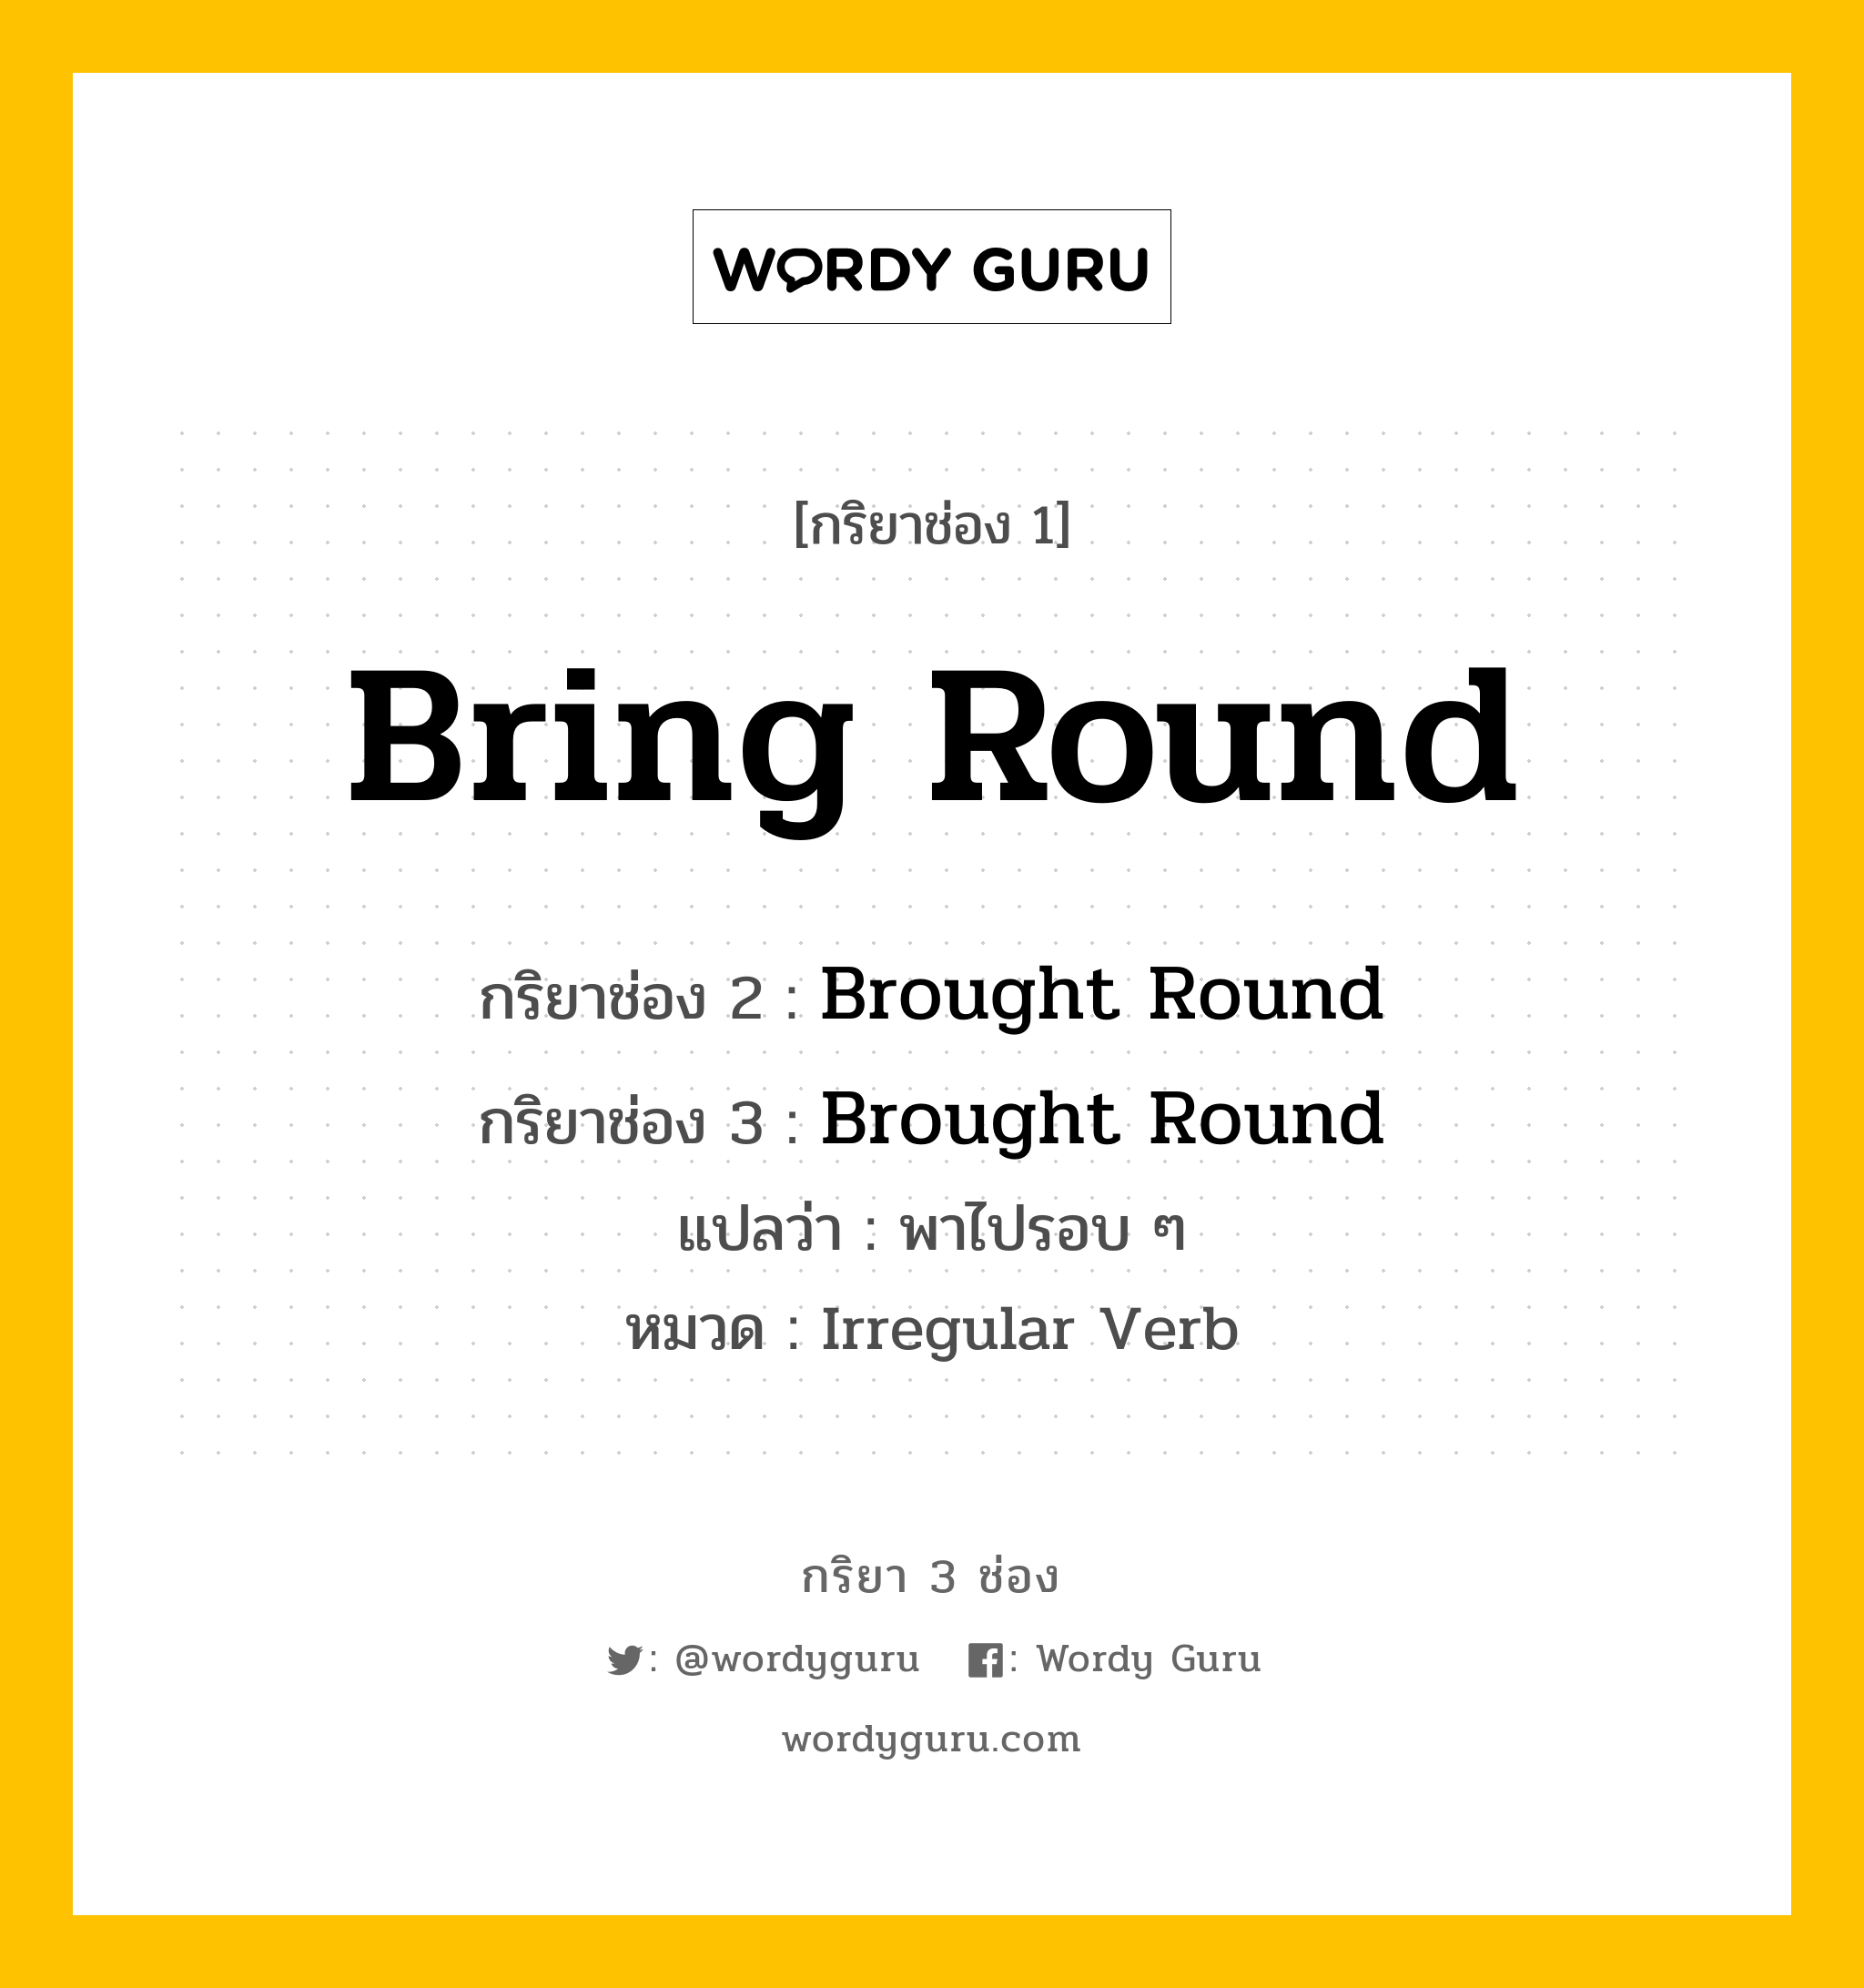 กริยา 3 ช่อง: Bring Round ช่อง 2 Bring Round ช่อง 3 คืออะไร, กริยาช่อง 1 Bring Round กริยาช่อง 2 Brought Round กริยาช่อง 3 Brought Round แปลว่า พาไปรอบ ๆ หมวด Irregular Verb หมวด Irregular Verb